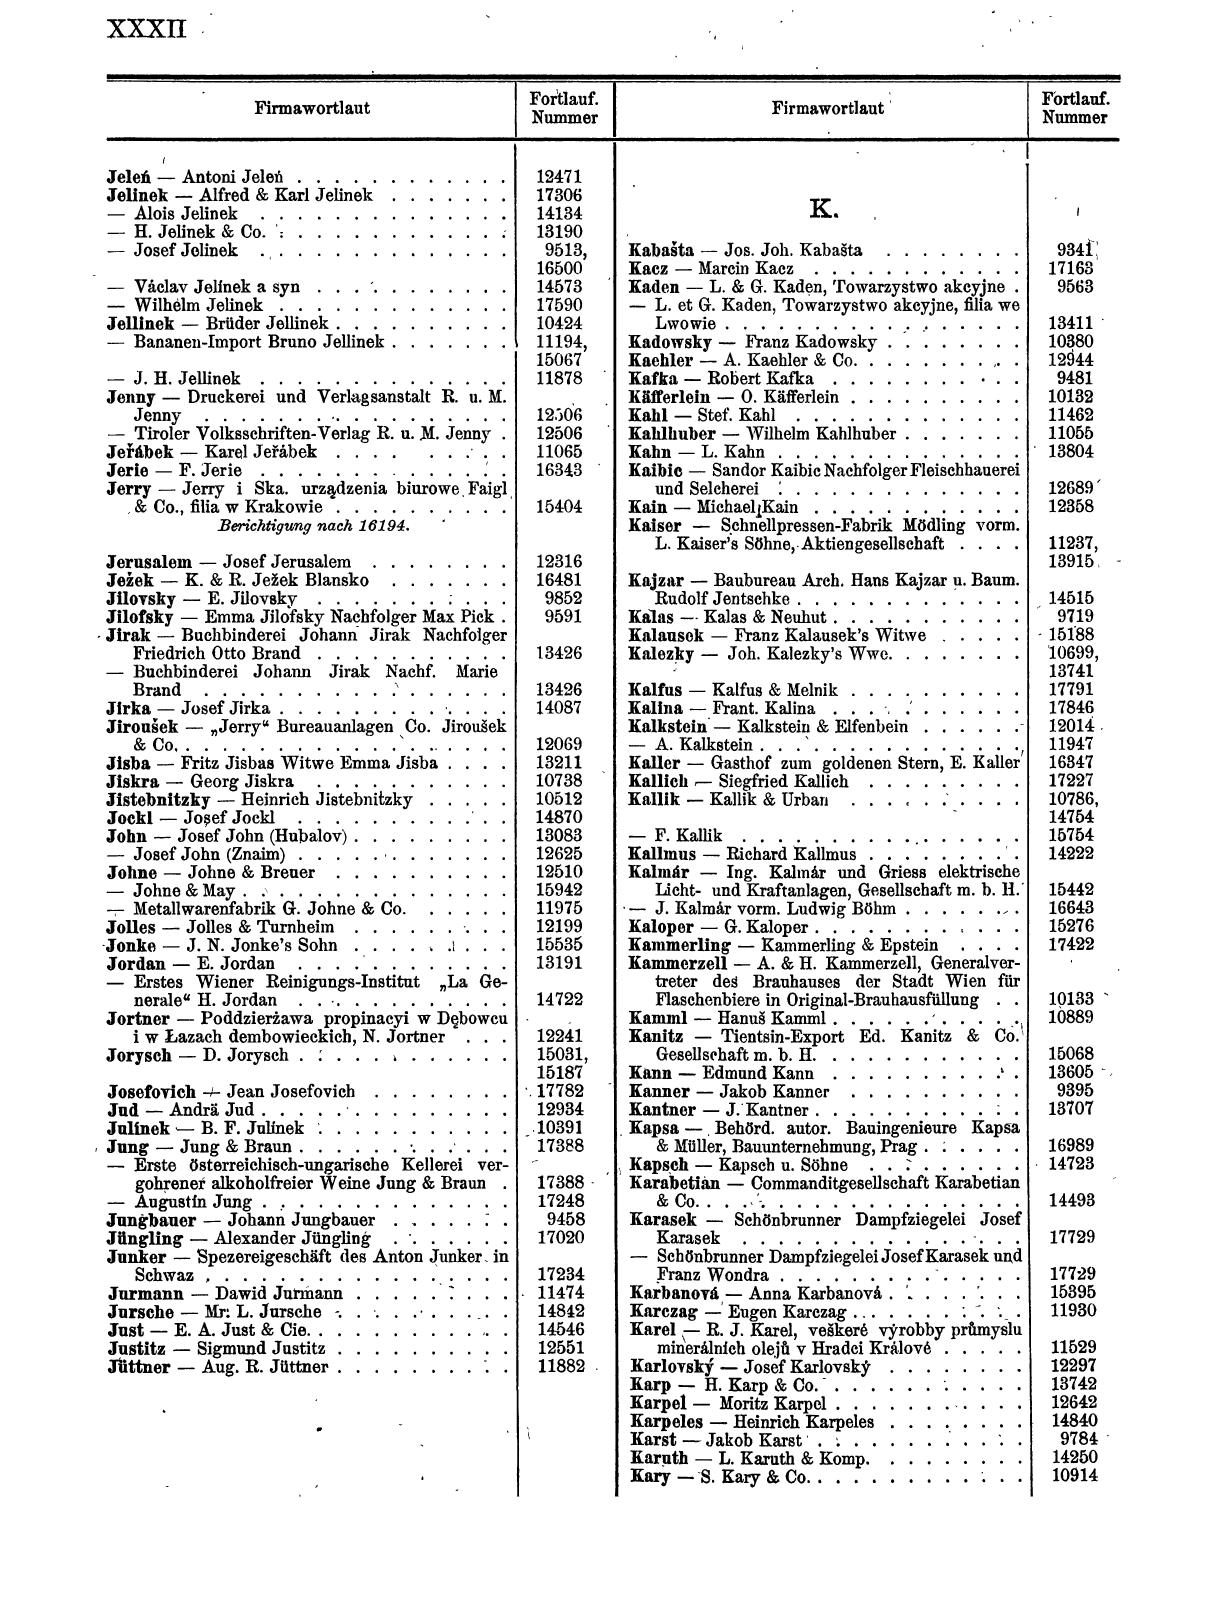 Zentralblatt für die Eintragungen in das Handelsregister 1913, Teil 2 - Seite 36